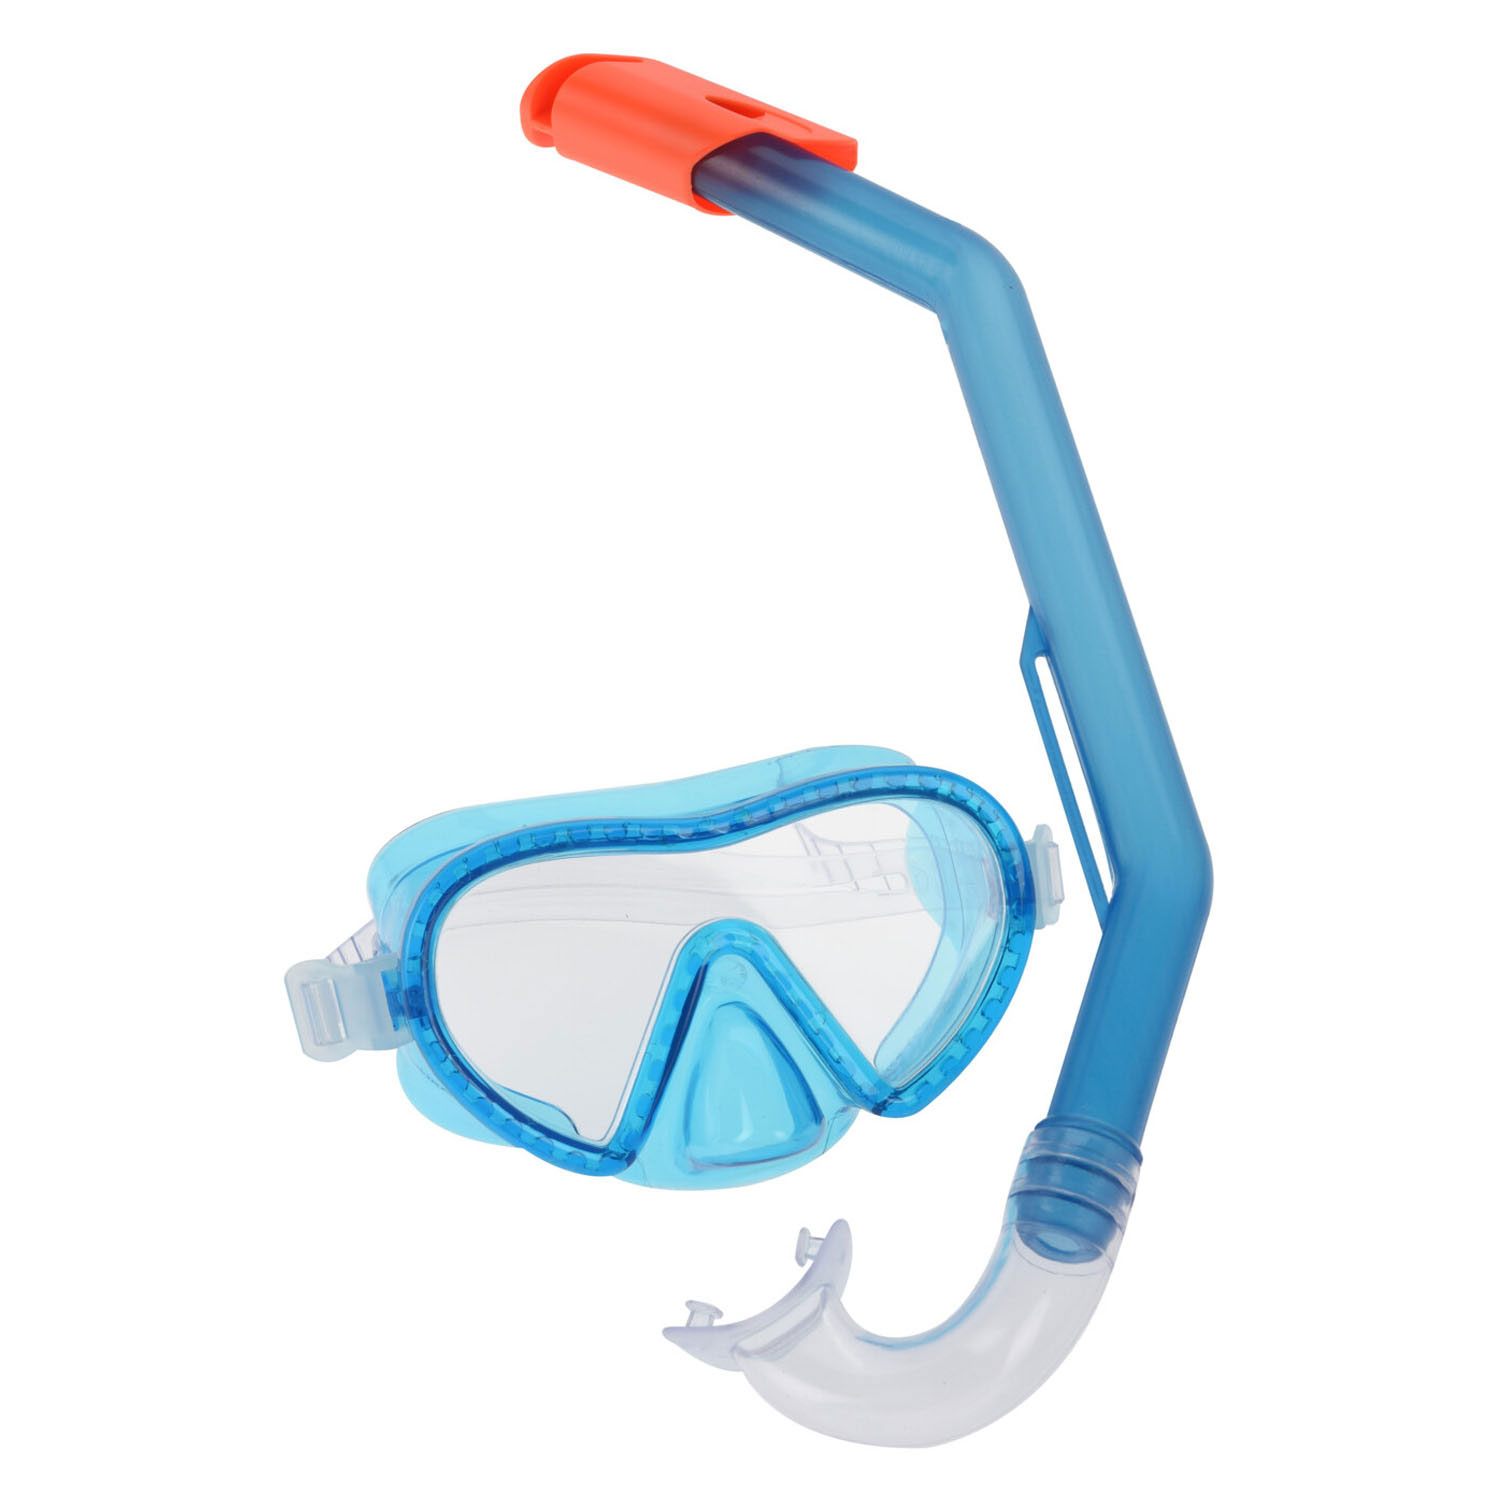 Snorkel for Kids - Blue Toys